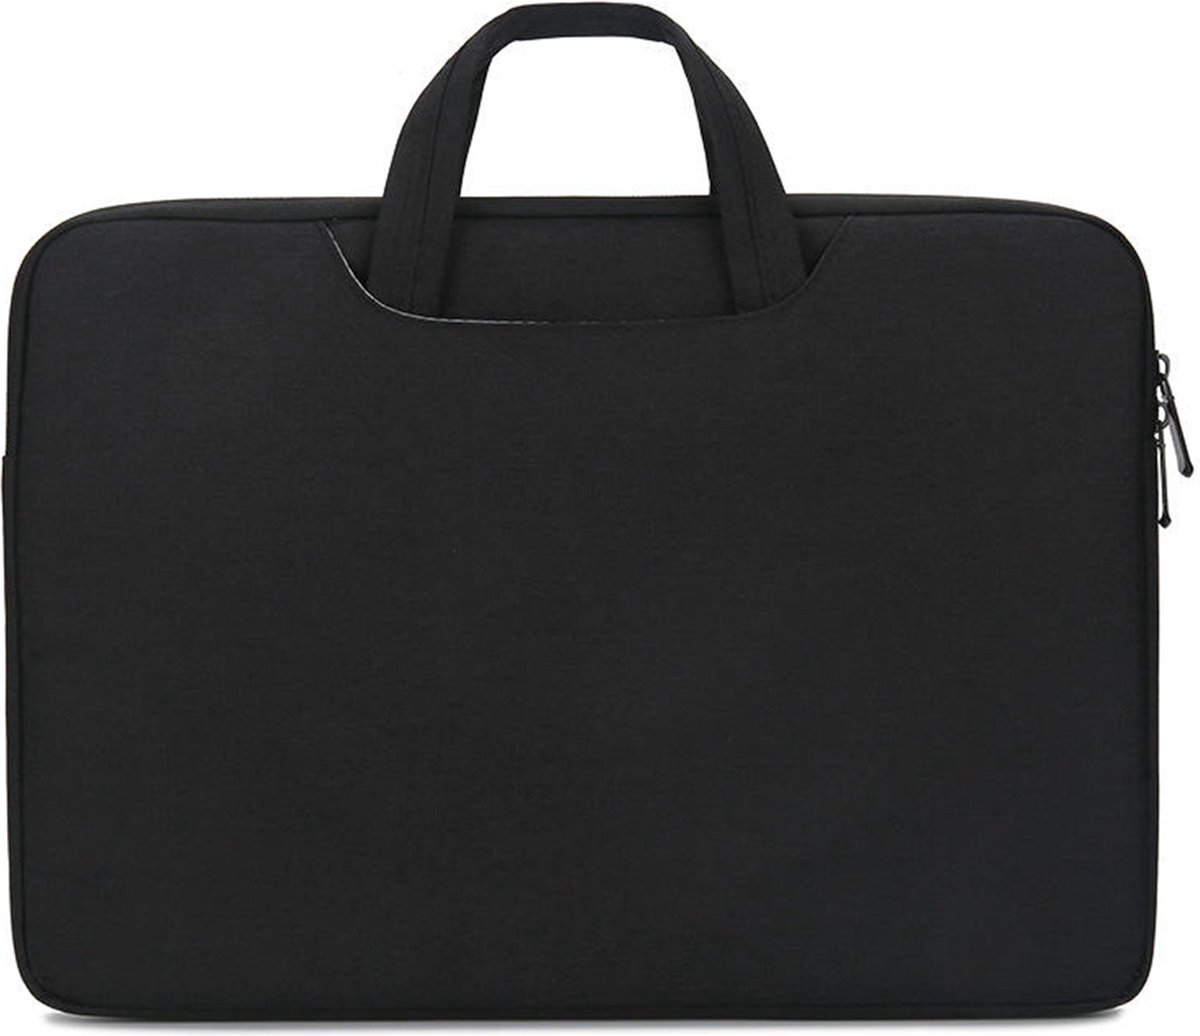 Case2go - Laptoptas geschikt voor Lenovo Yoga - Laptophoes 13 inch - Zwart